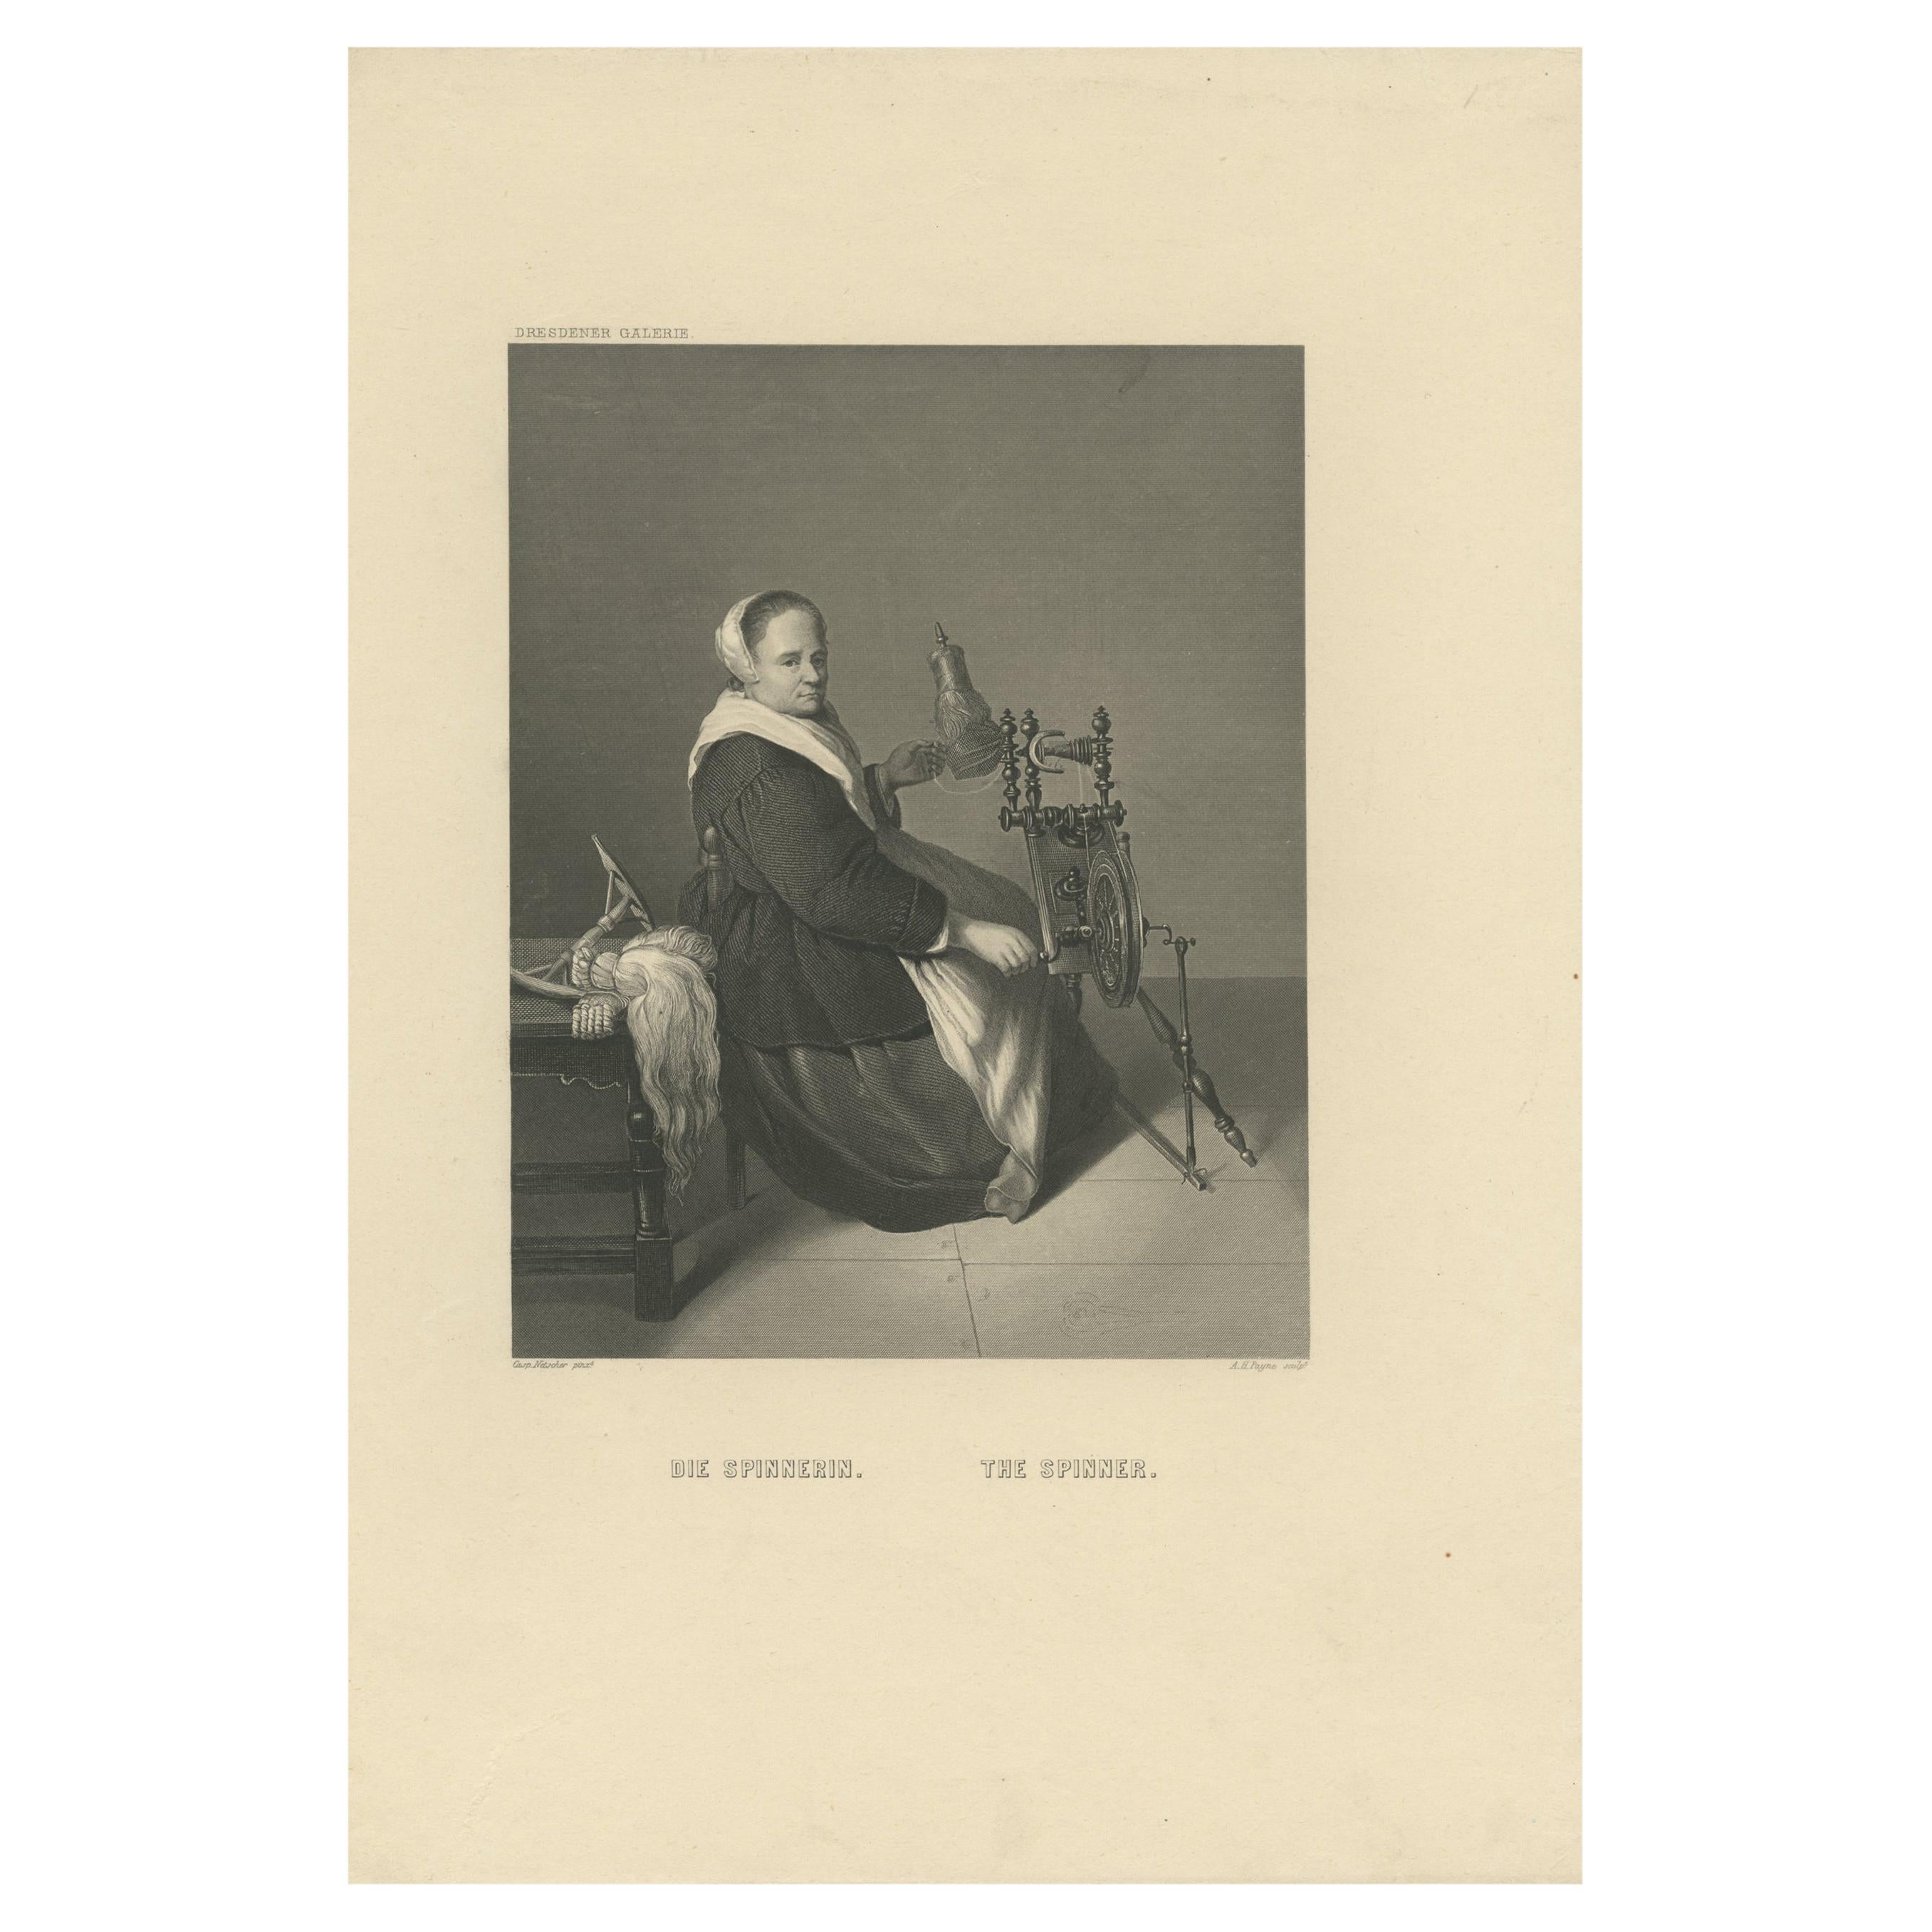 Impression ancienne d'une femme tournant sur une roue tournante par Payne, vers 1850